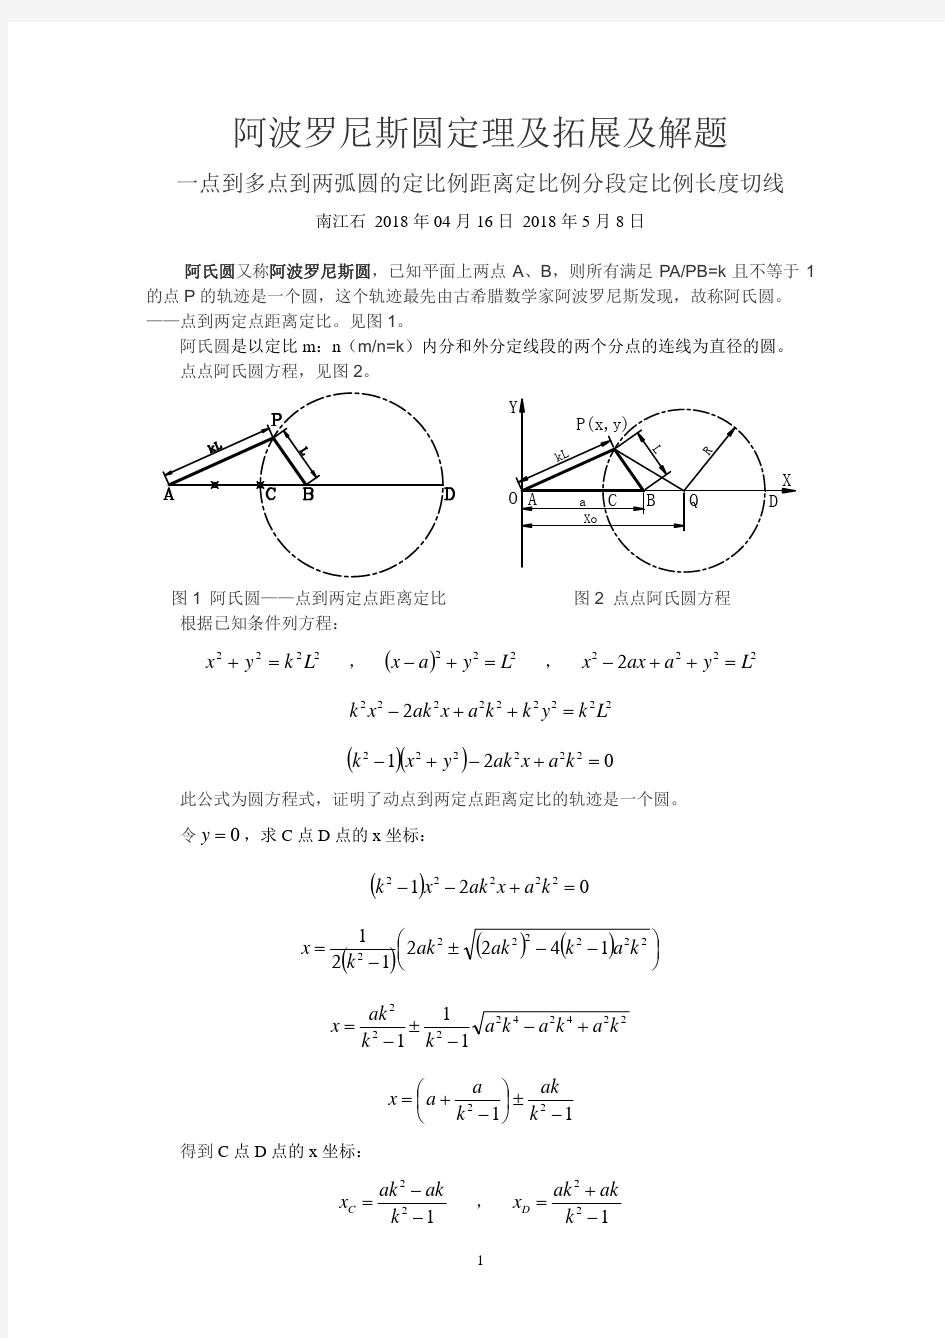 阿波罗尼斯圆定理及拓展及解题